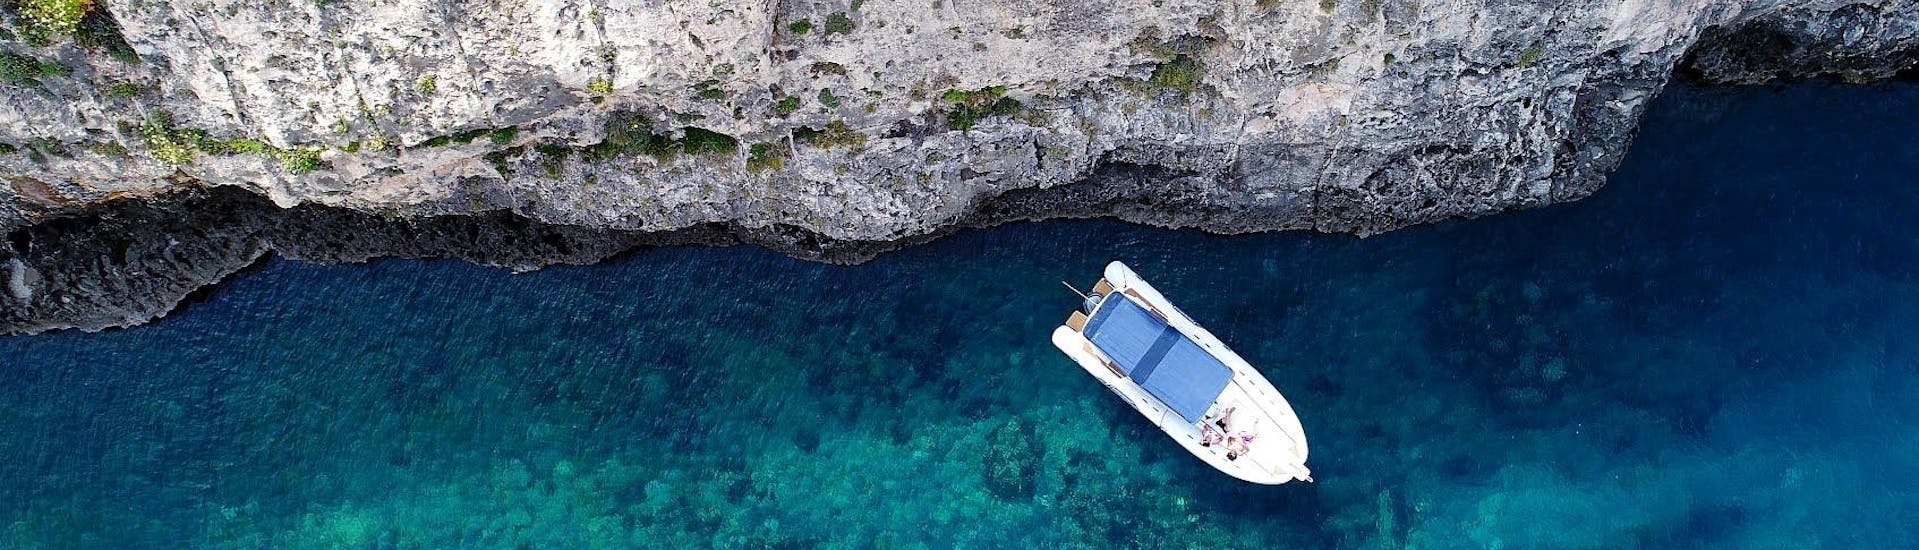 De Vitamin Sea boot aangemeerd in een prachtige baai aan de kust van Gozo tijdens de boottocht rond Gozo & Comino - Hele dag.